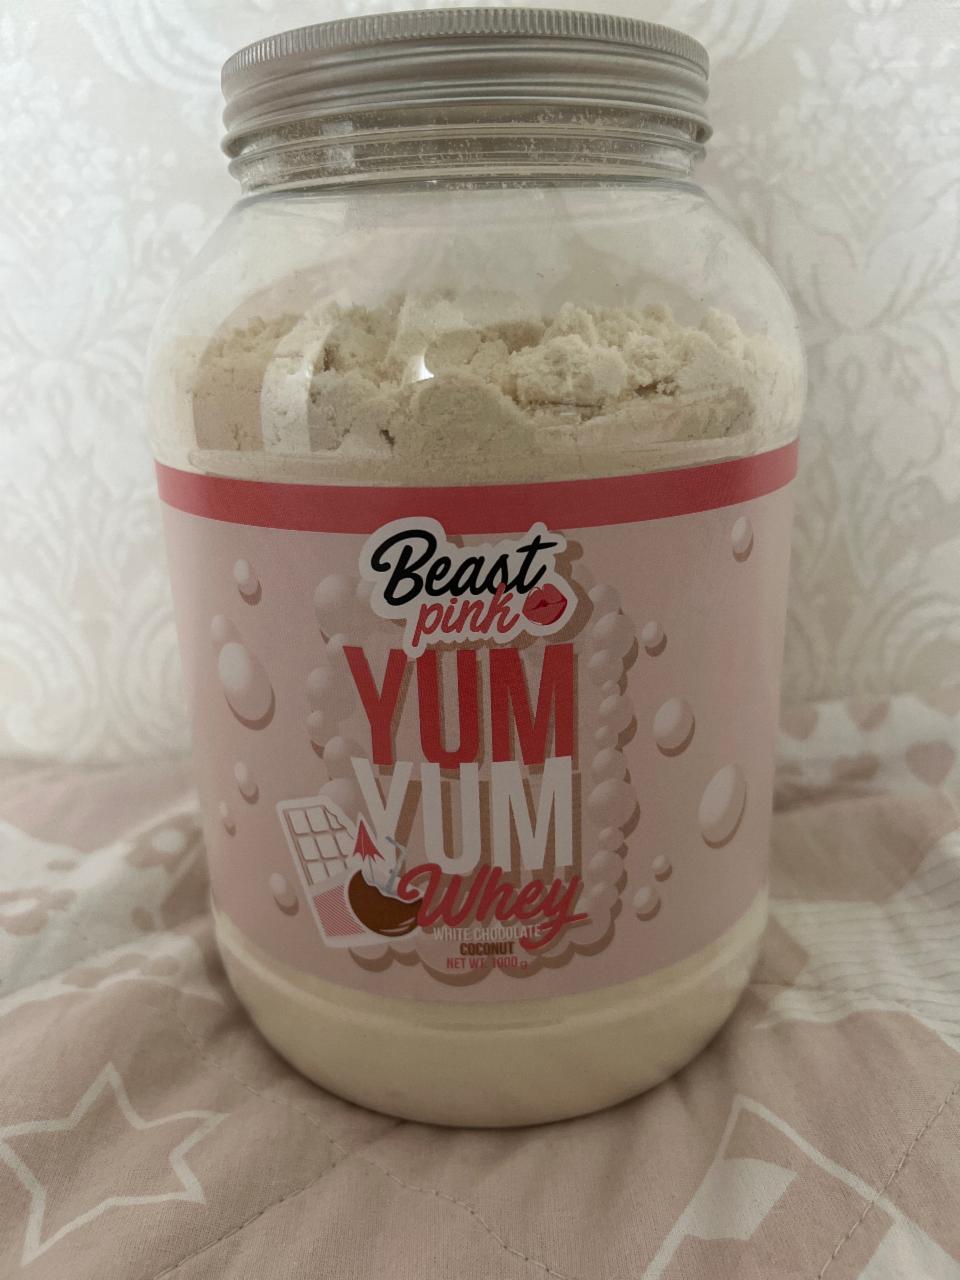 Фото - Протеїн для жінок Yum Yum Whey білий шоколад - кокос Beast pink